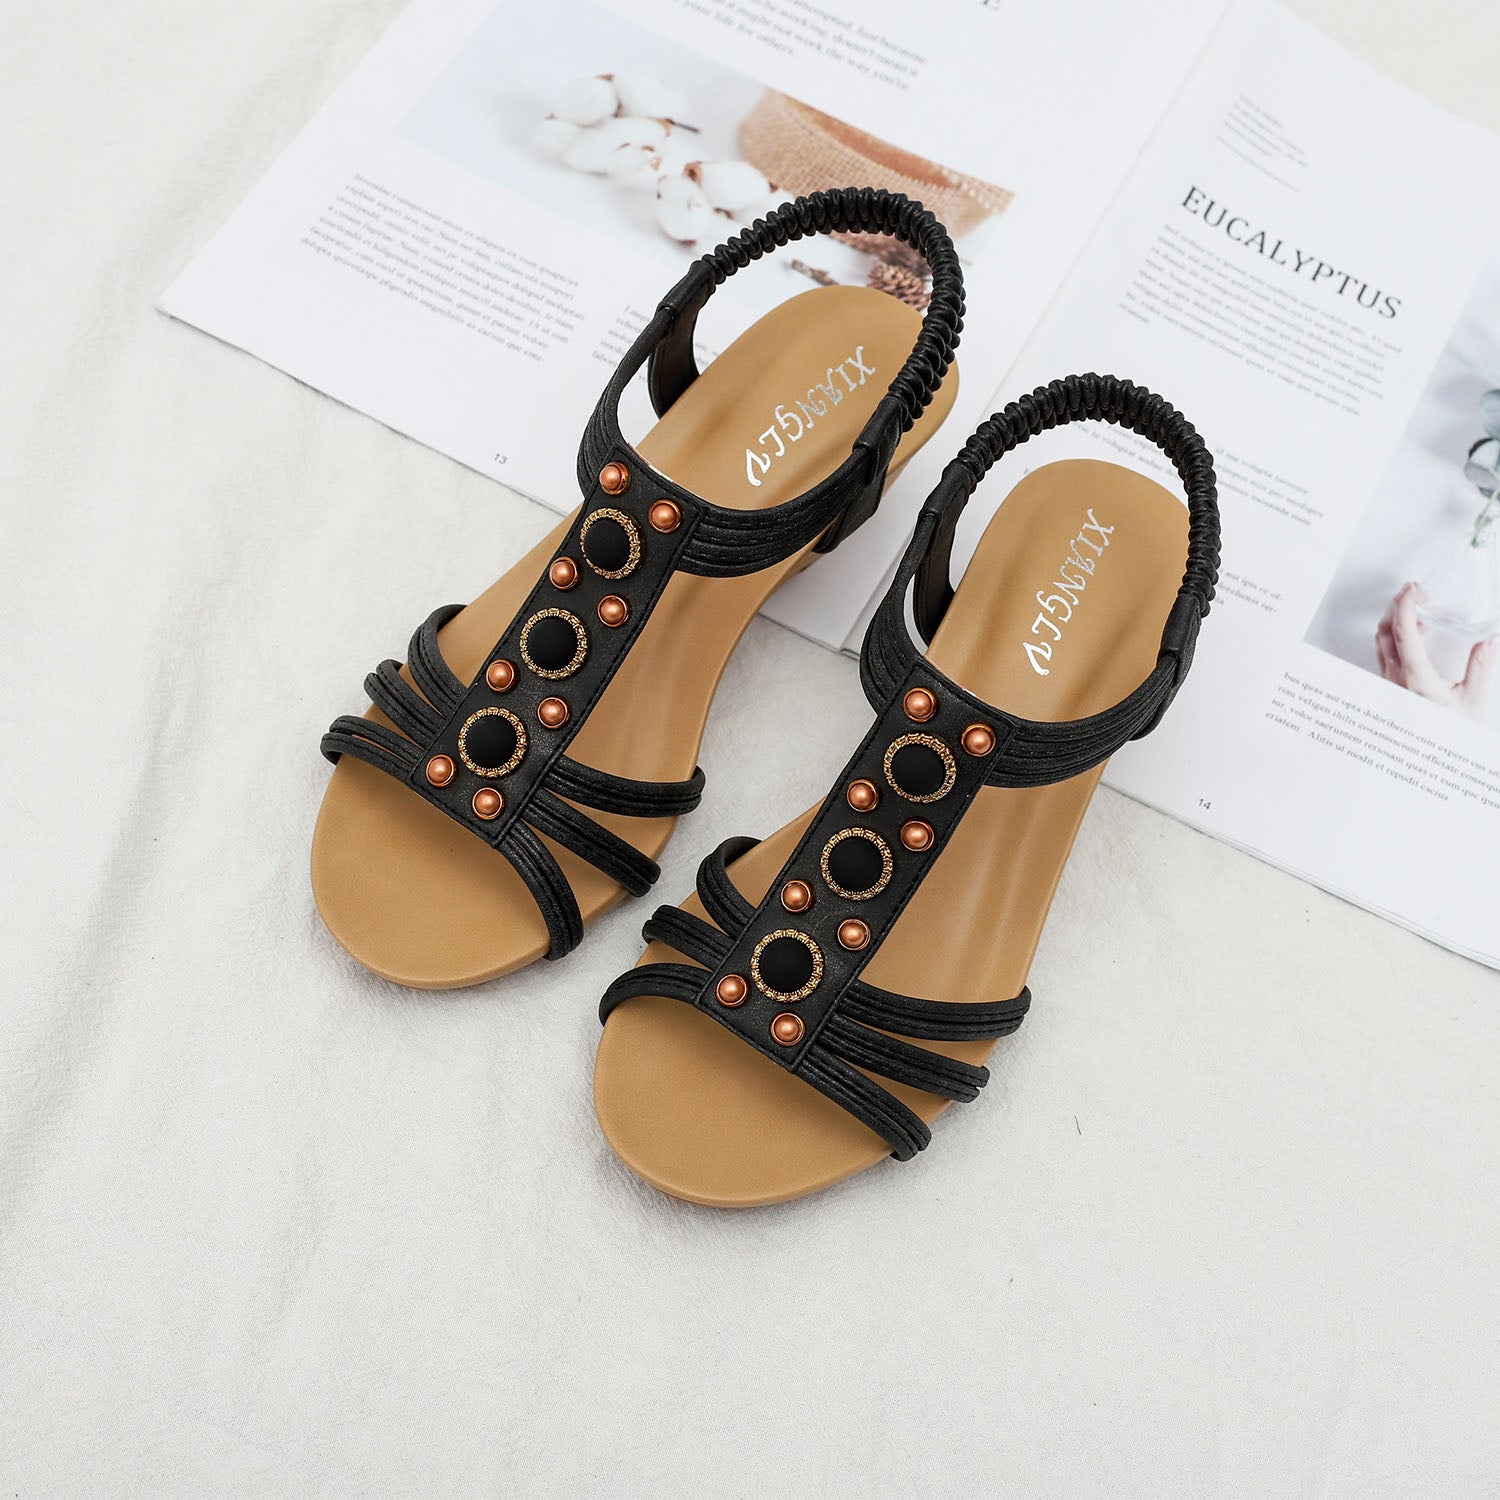 Bohemian Fashion Wedges Sandals